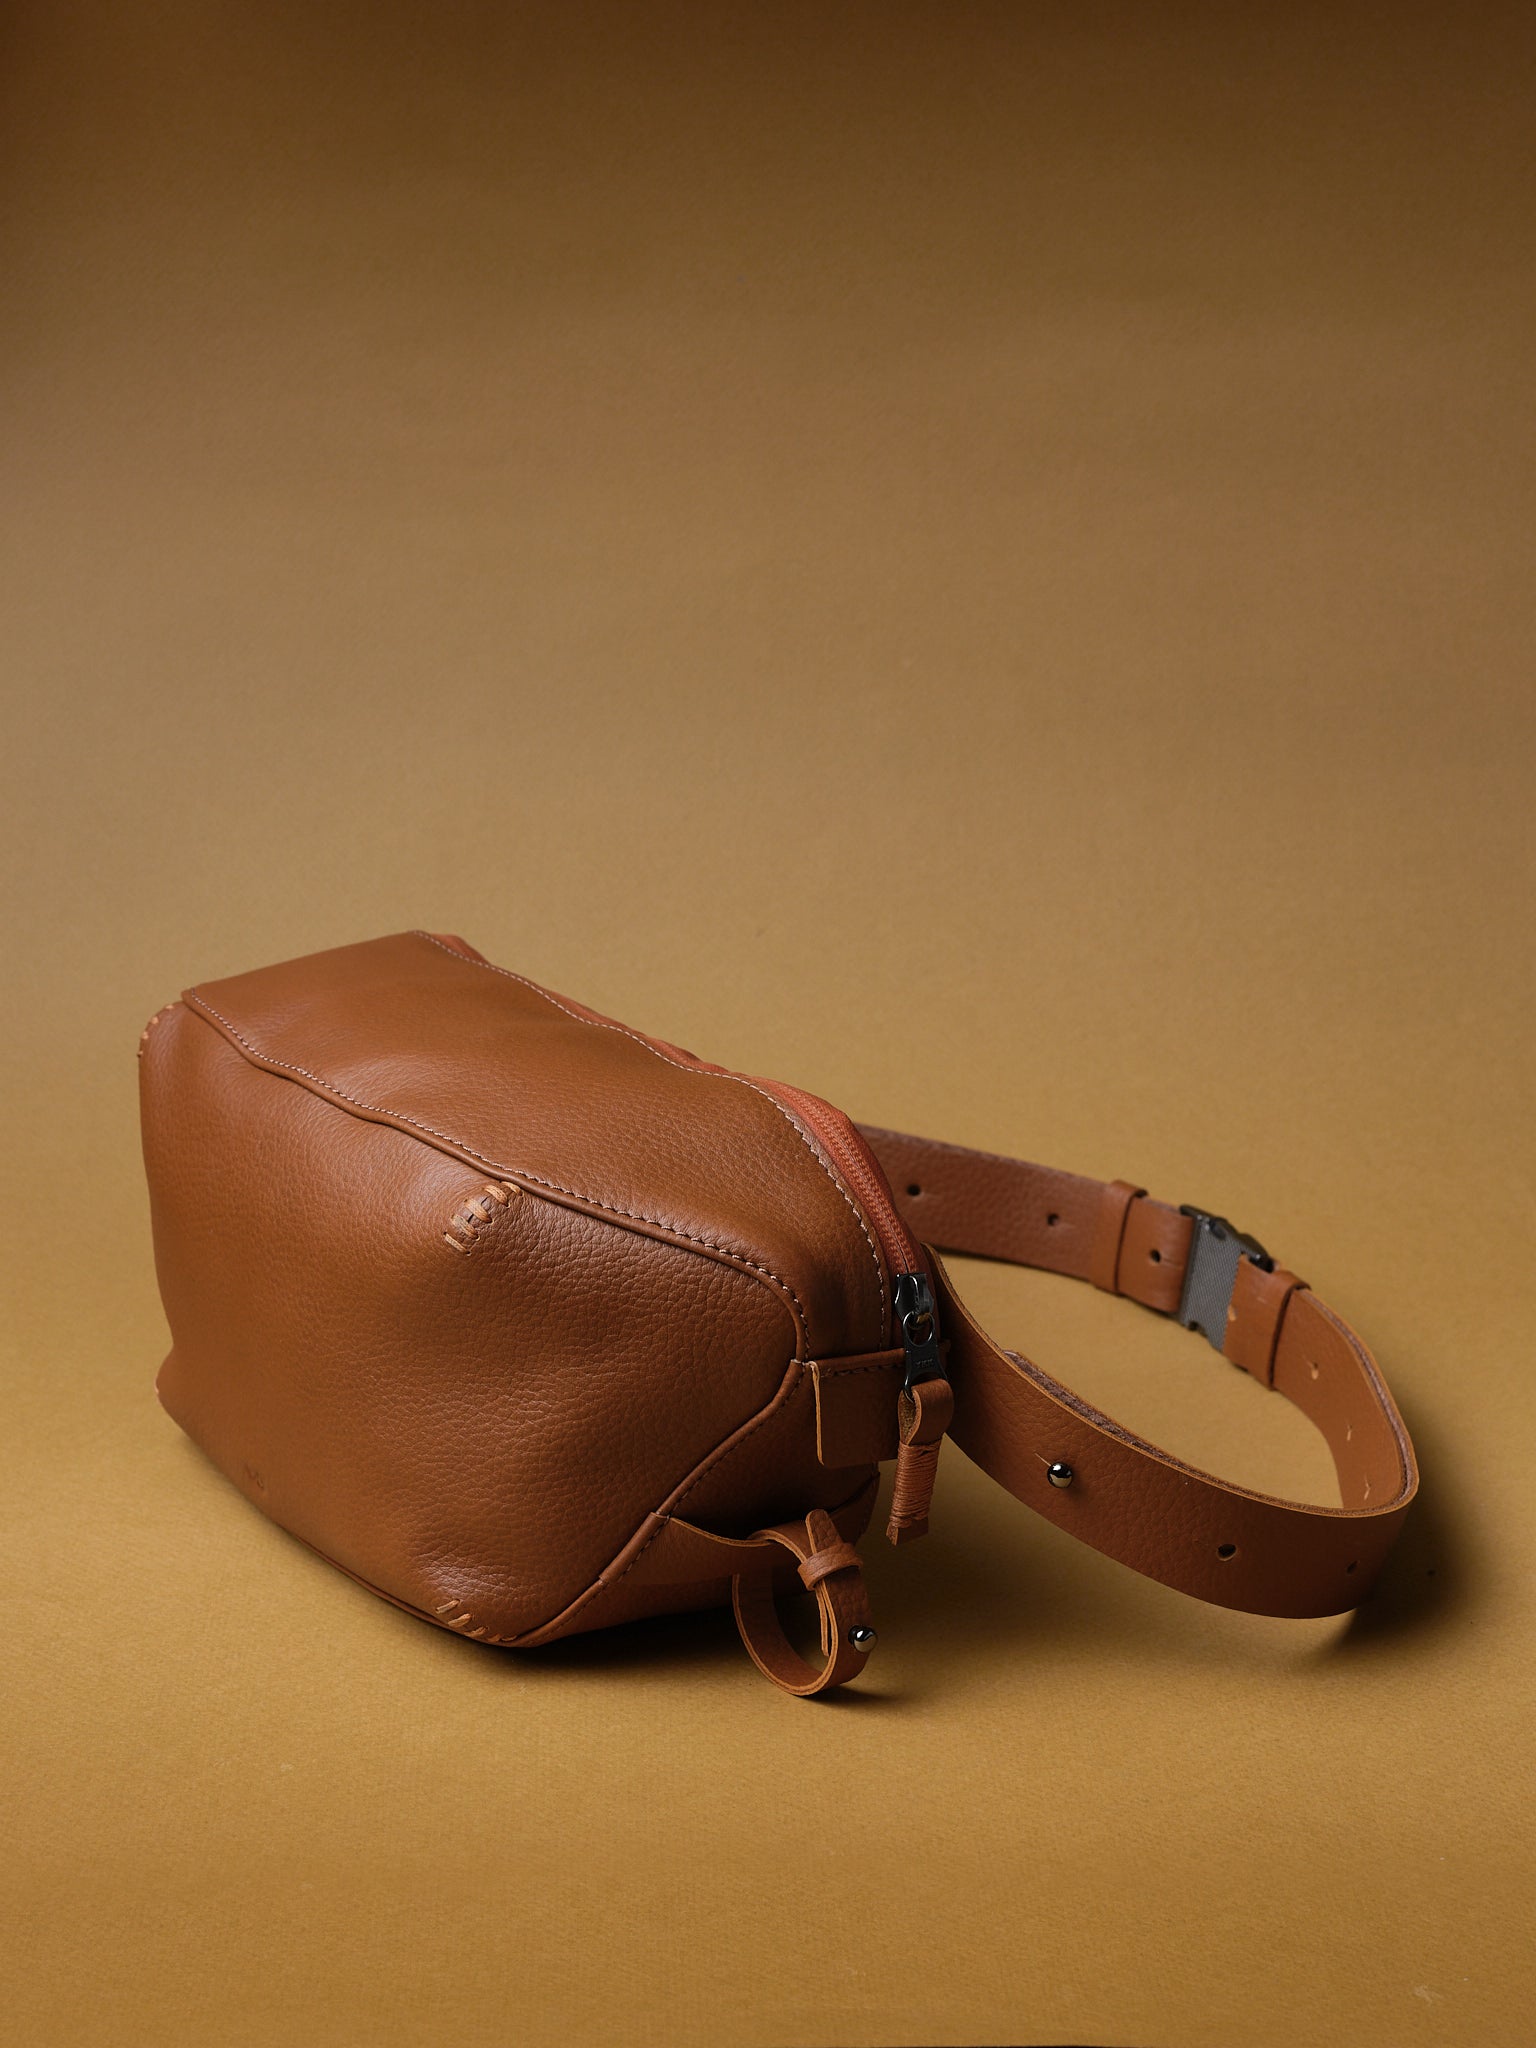 Adjustable Shoulder Strap. Fanny Pack Designer. Sling Bag for Men Tan by Capra Leather